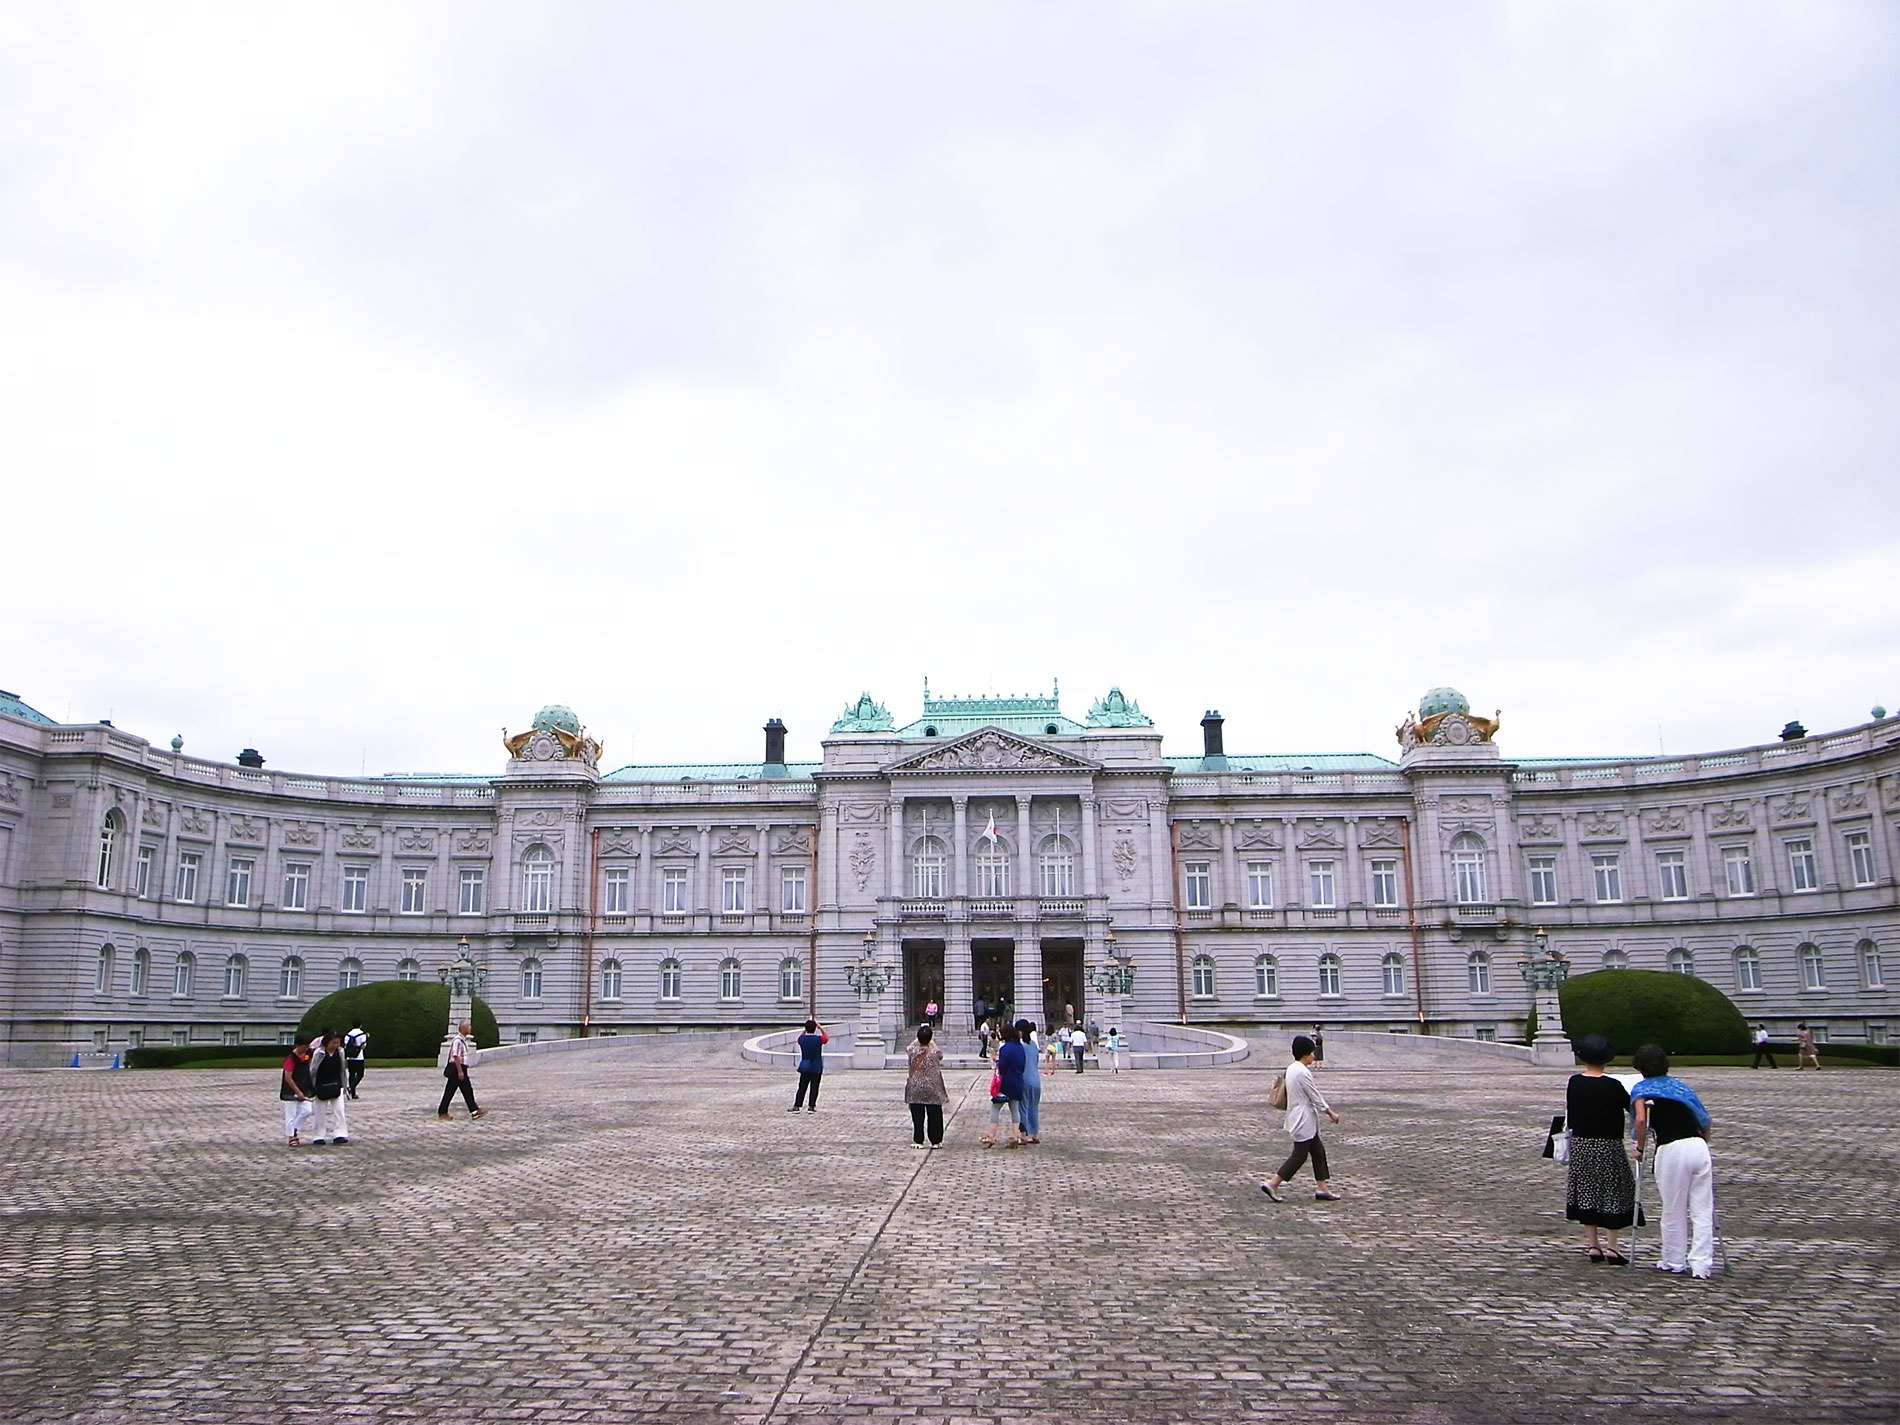 state_guest_house_akasaka_palace_tokyo_2015 | 迎賓館赤坂離宮を見学に行ってきました